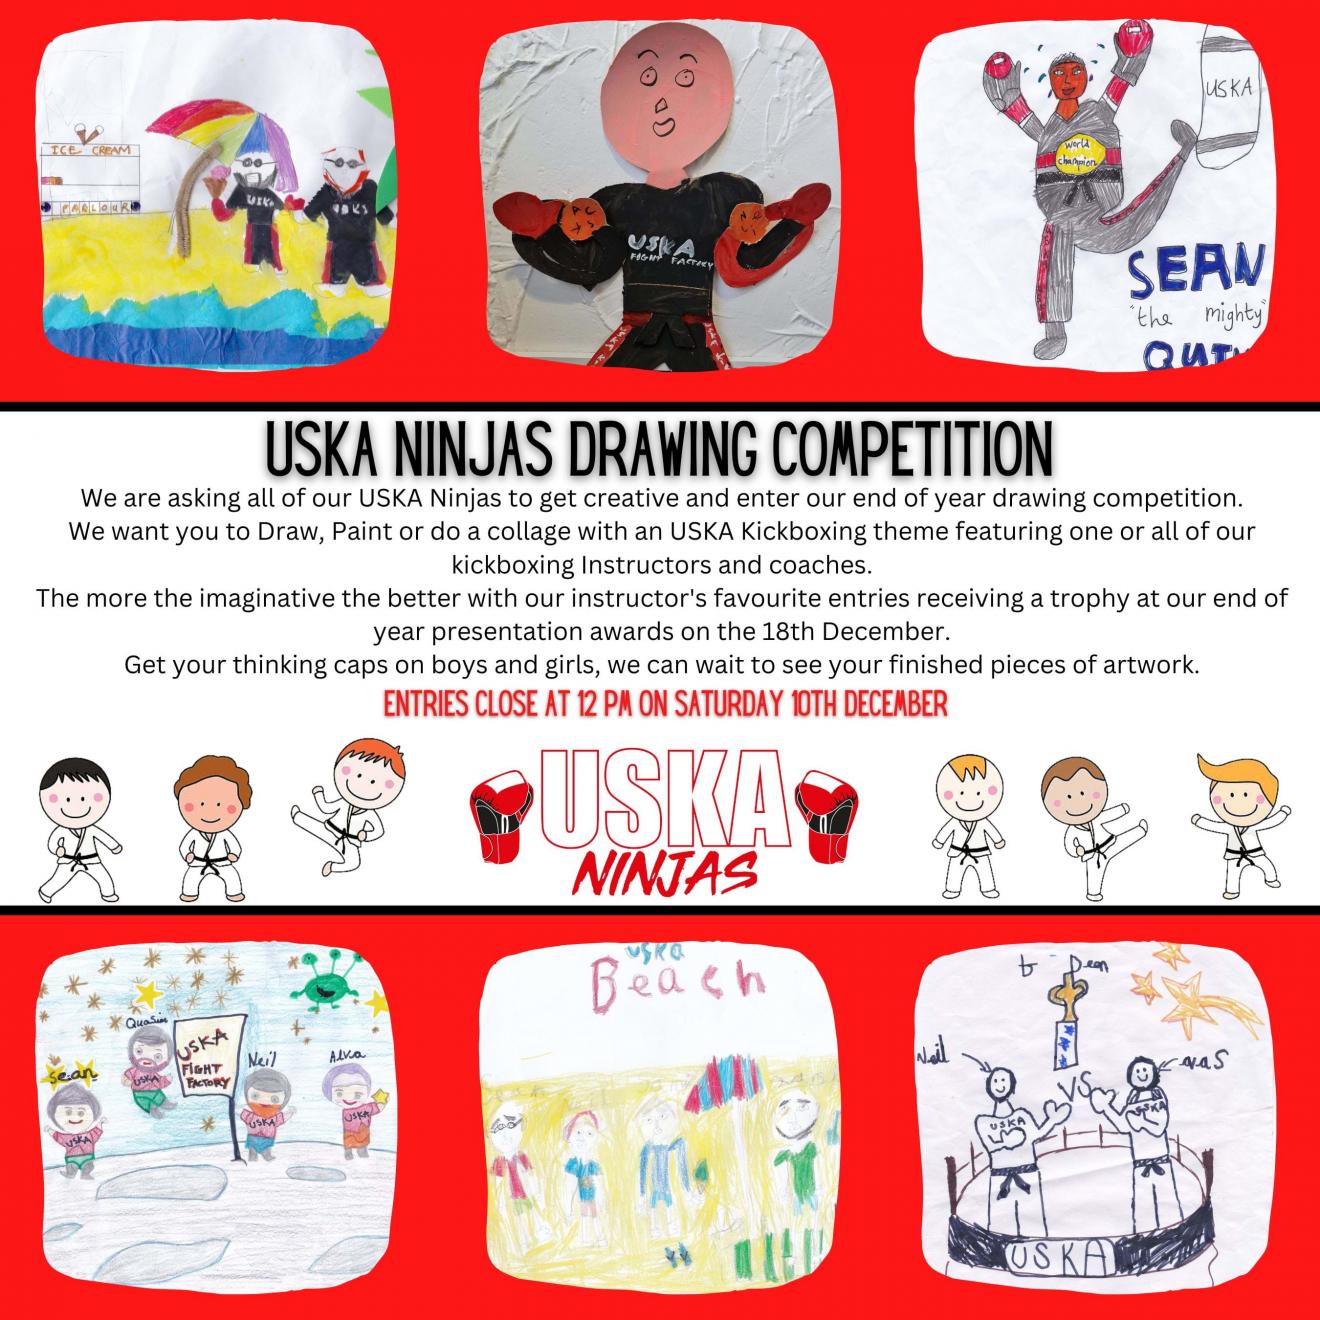 14-11-22 - USKA Ninja's Drawing Competition